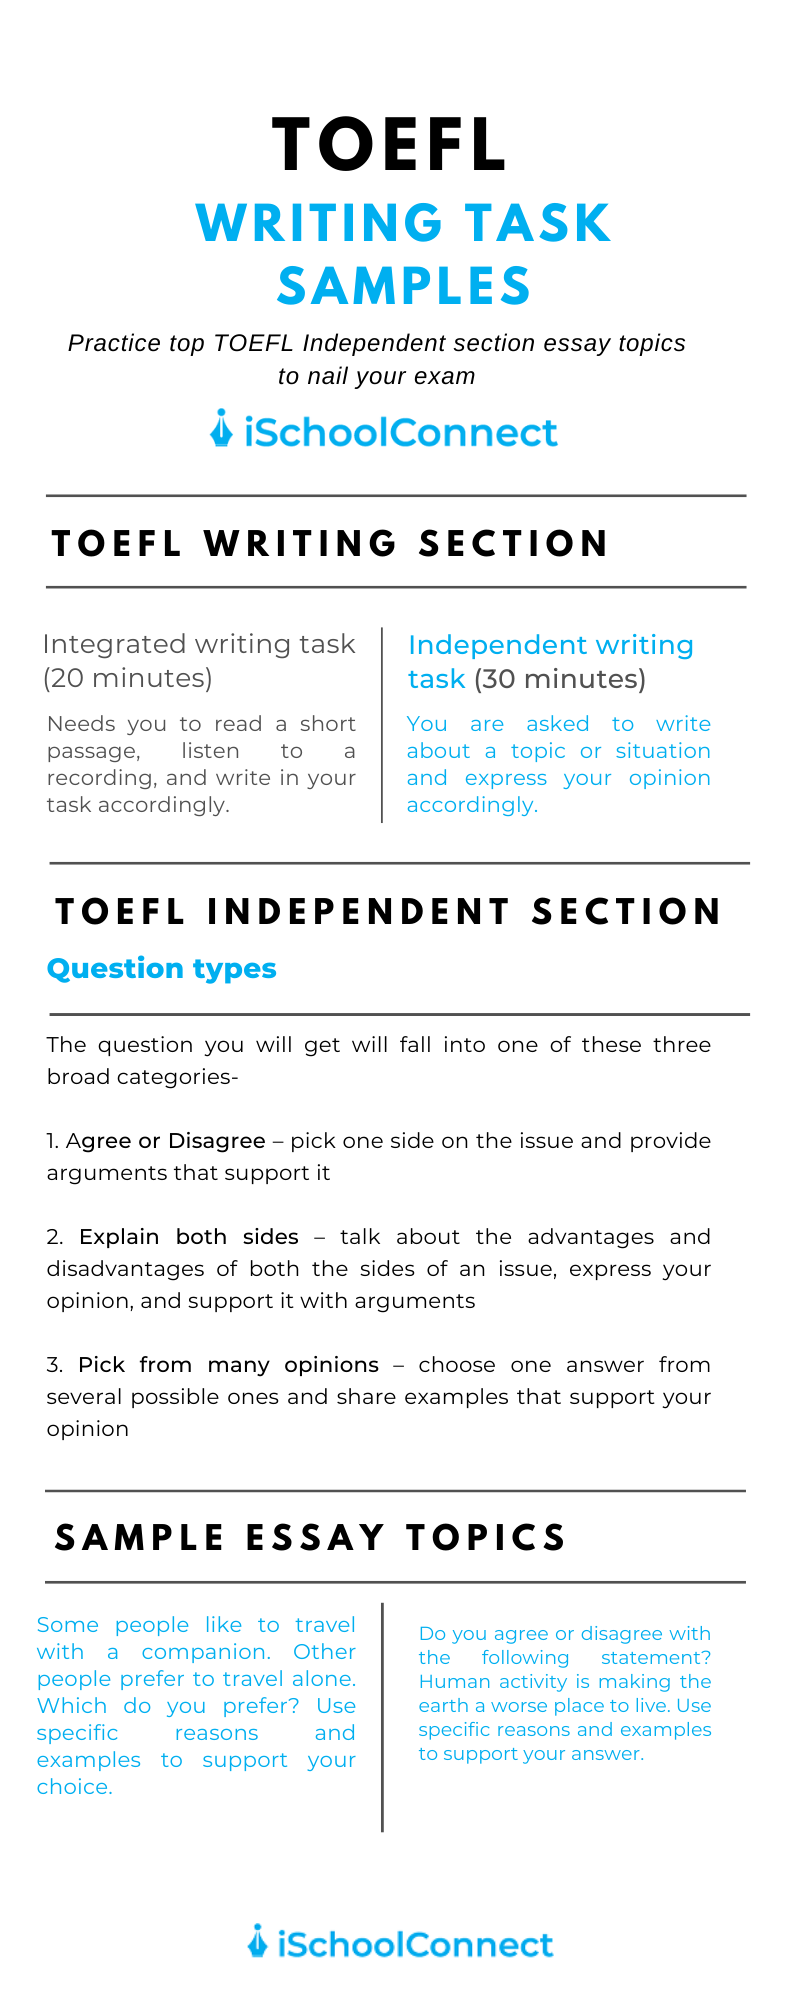 TOEFL essay topics